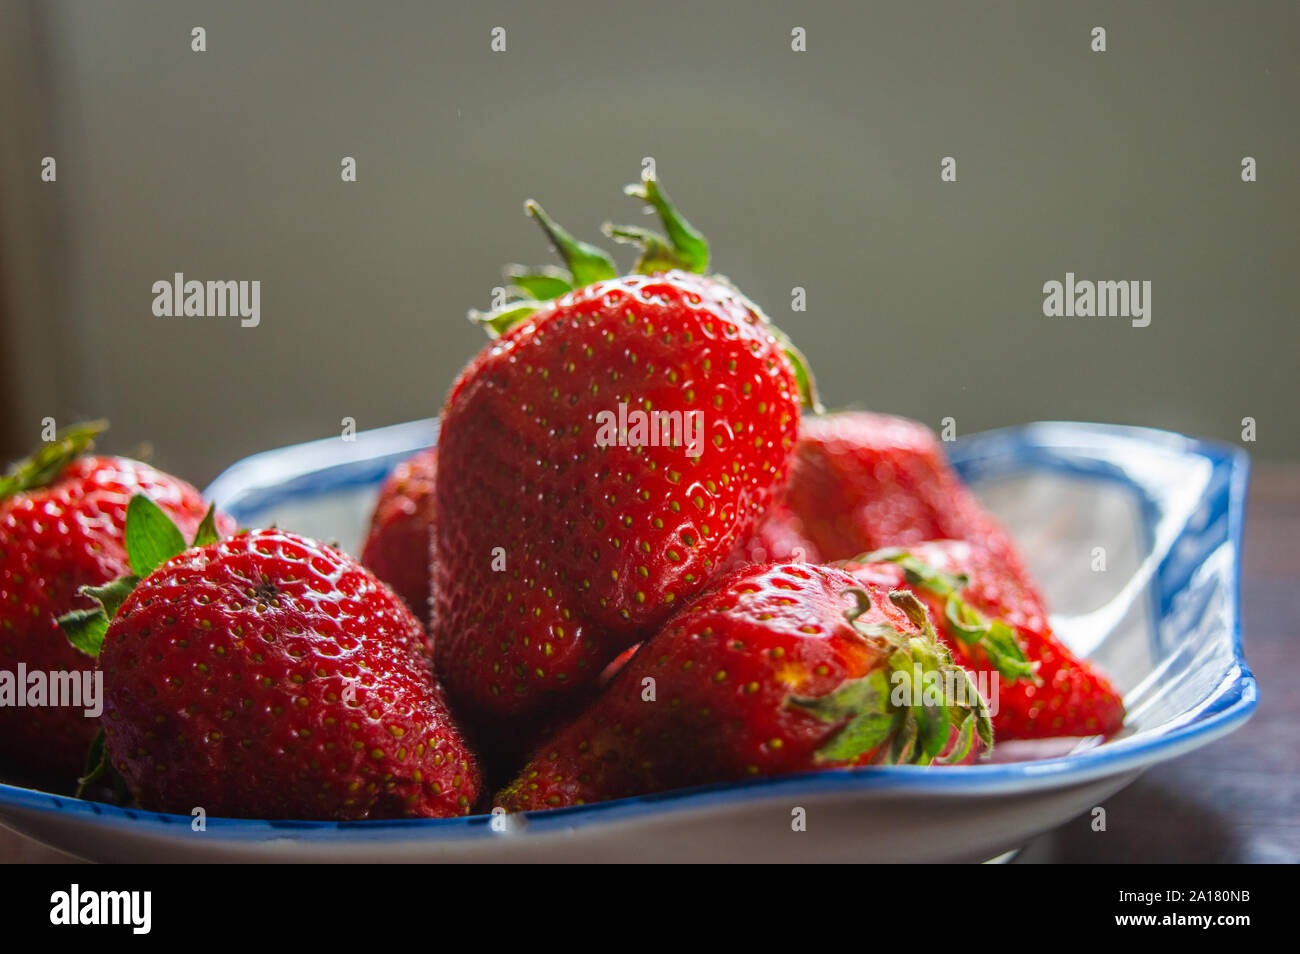 Les fraises bio plein de vitamines. L'alimentation saine. Banque D'Images